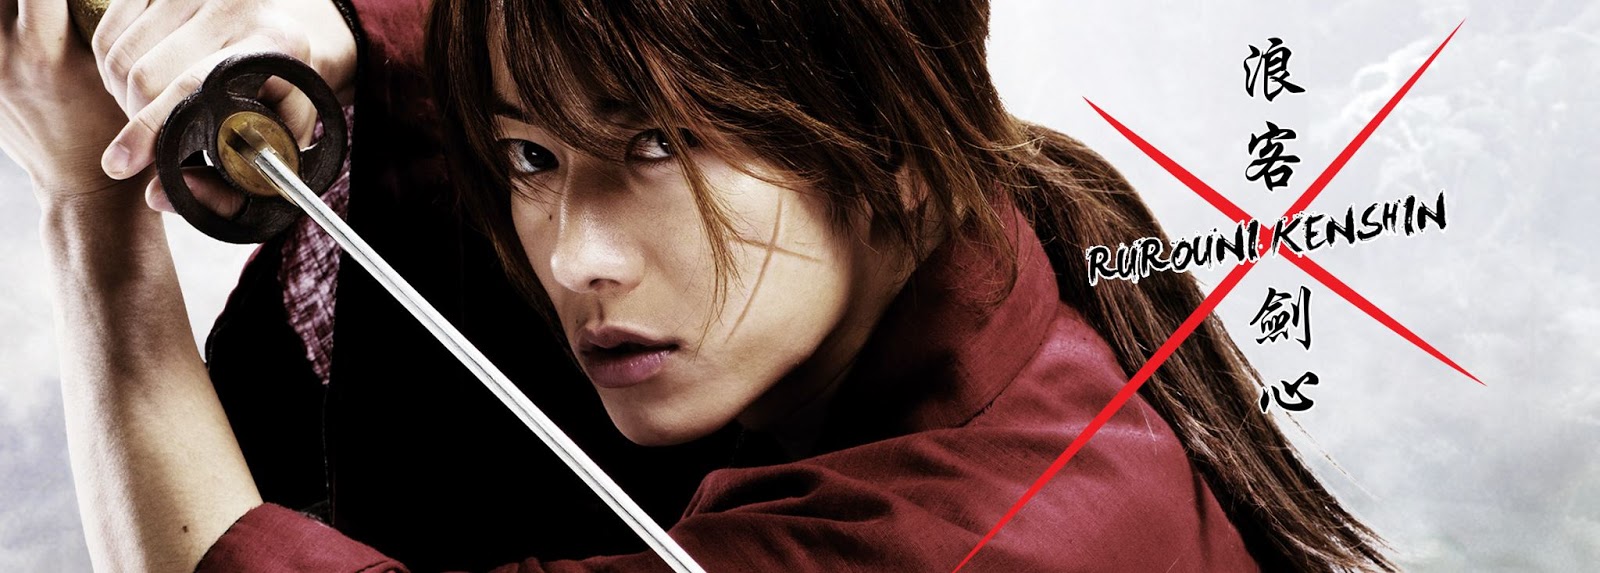 Que tal assistir a um trailer de 5 minutos do novo filme do Samurai X?